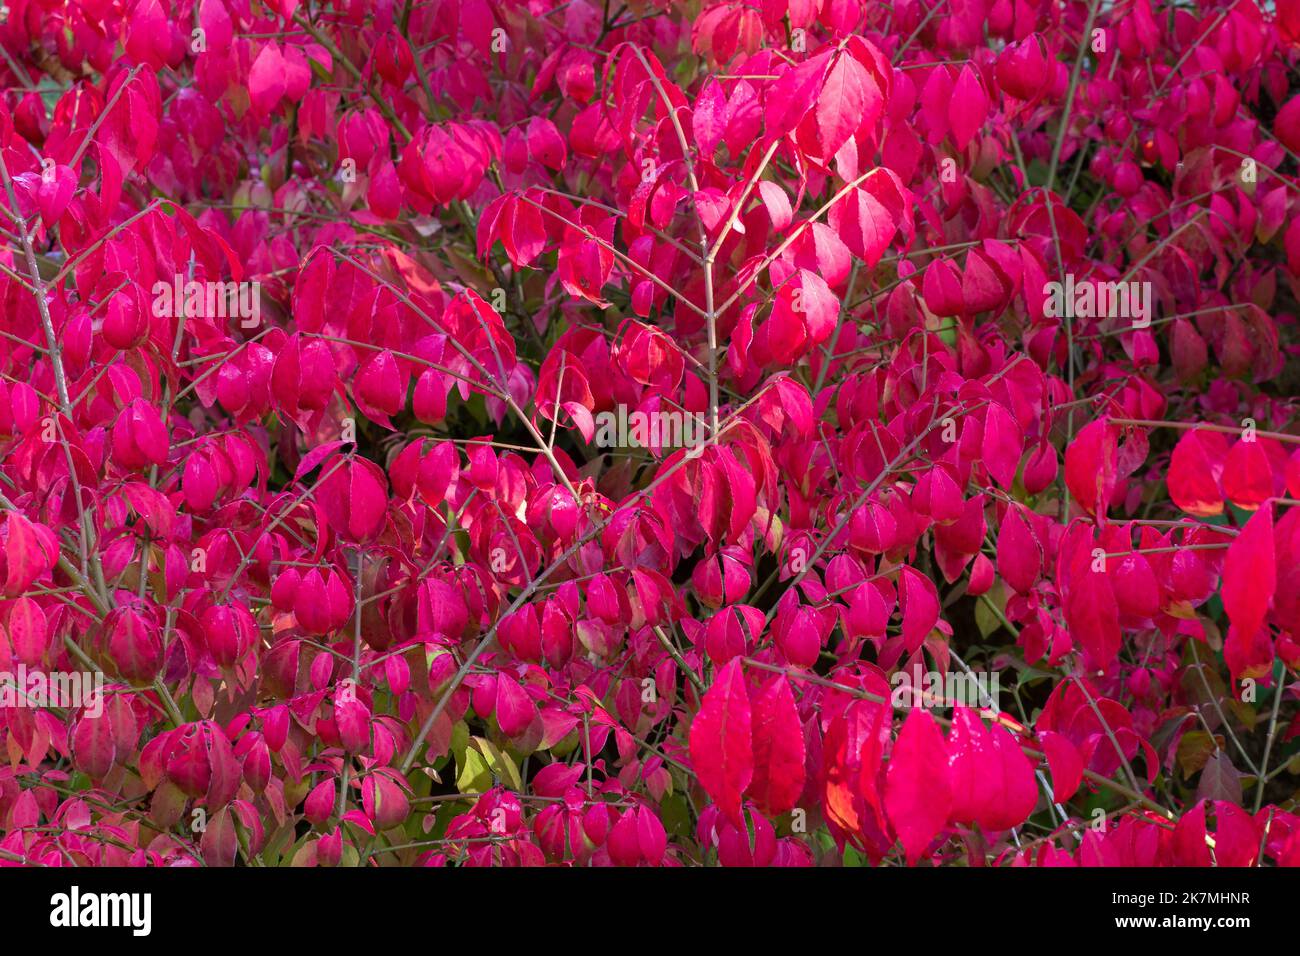 Feuilles d'automne rouge vif de l'arbuste ornemental Euonymus alatus Compactus Banque D'Images